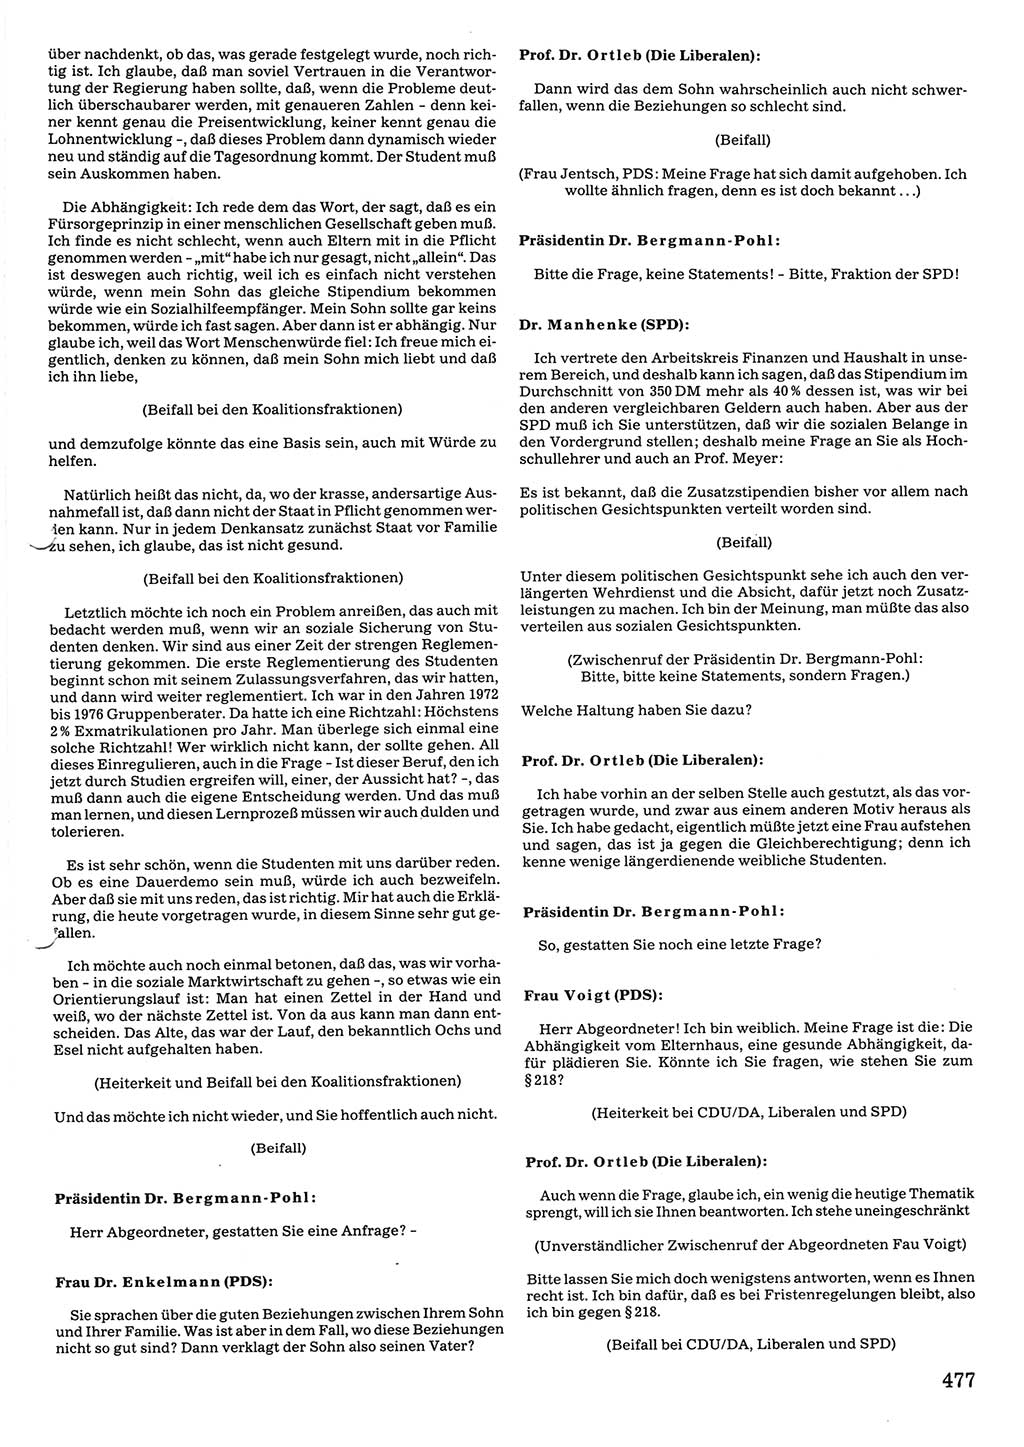 Tagungen der Volkskammer (VK) der Deutschen Demokratischen Republik (DDR), 10. Wahlperiode 1990, Seite 477 (VK. DDR 10. WP. 1990, Prot. Tg. 1-38, 5.4.-2.10.1990, S. 477)